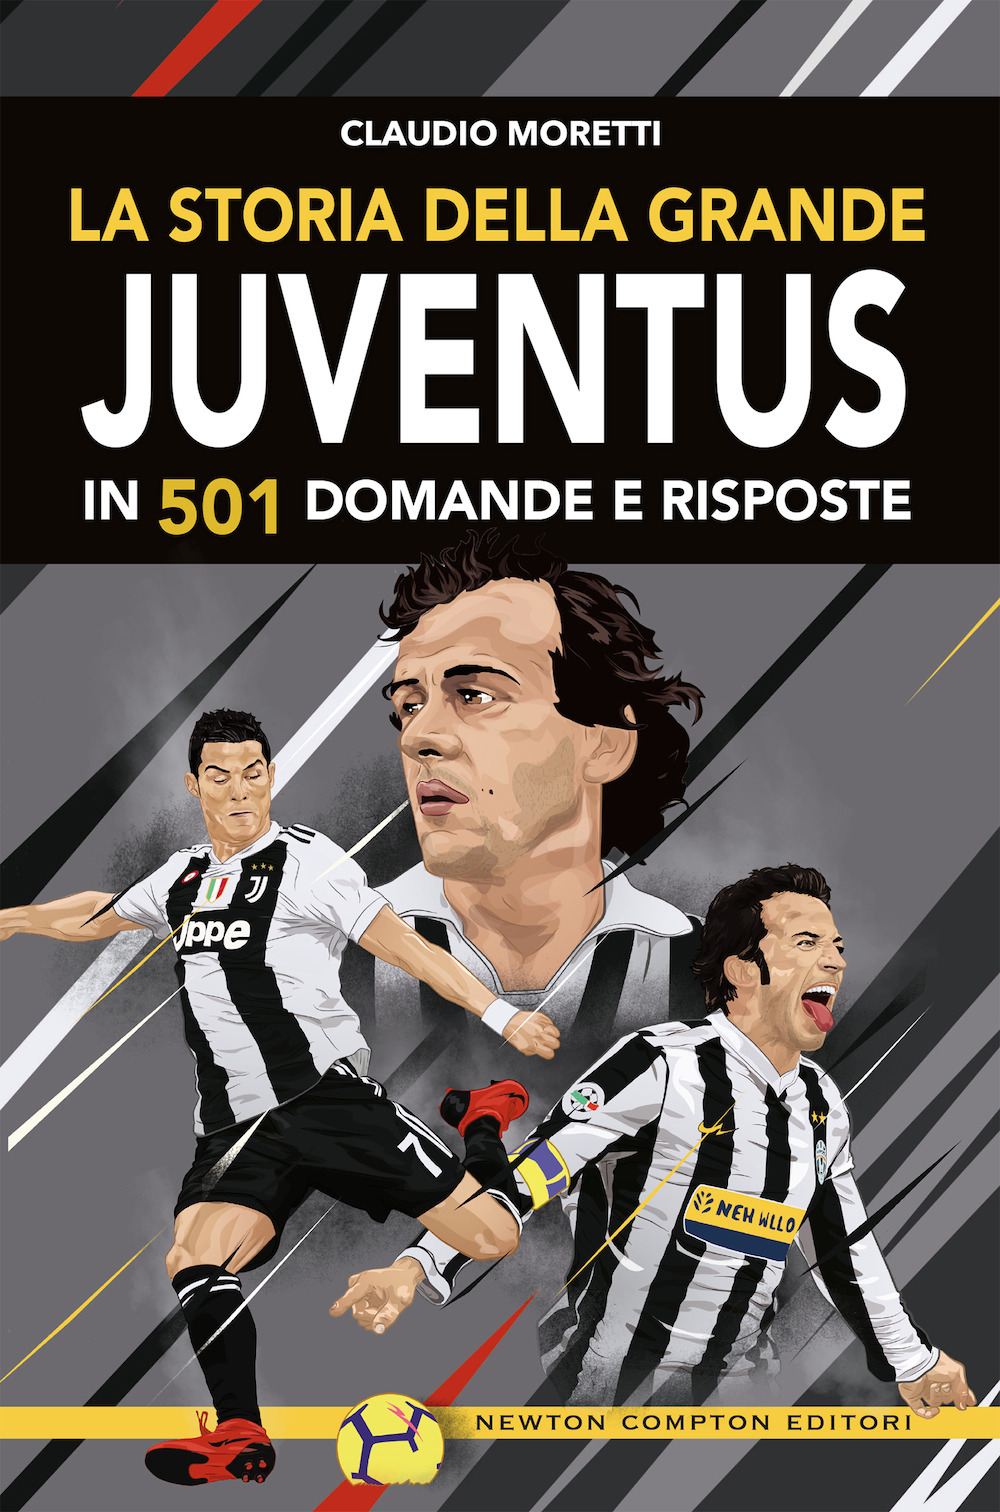 La storia della grande Juventus in 501 domande risposte